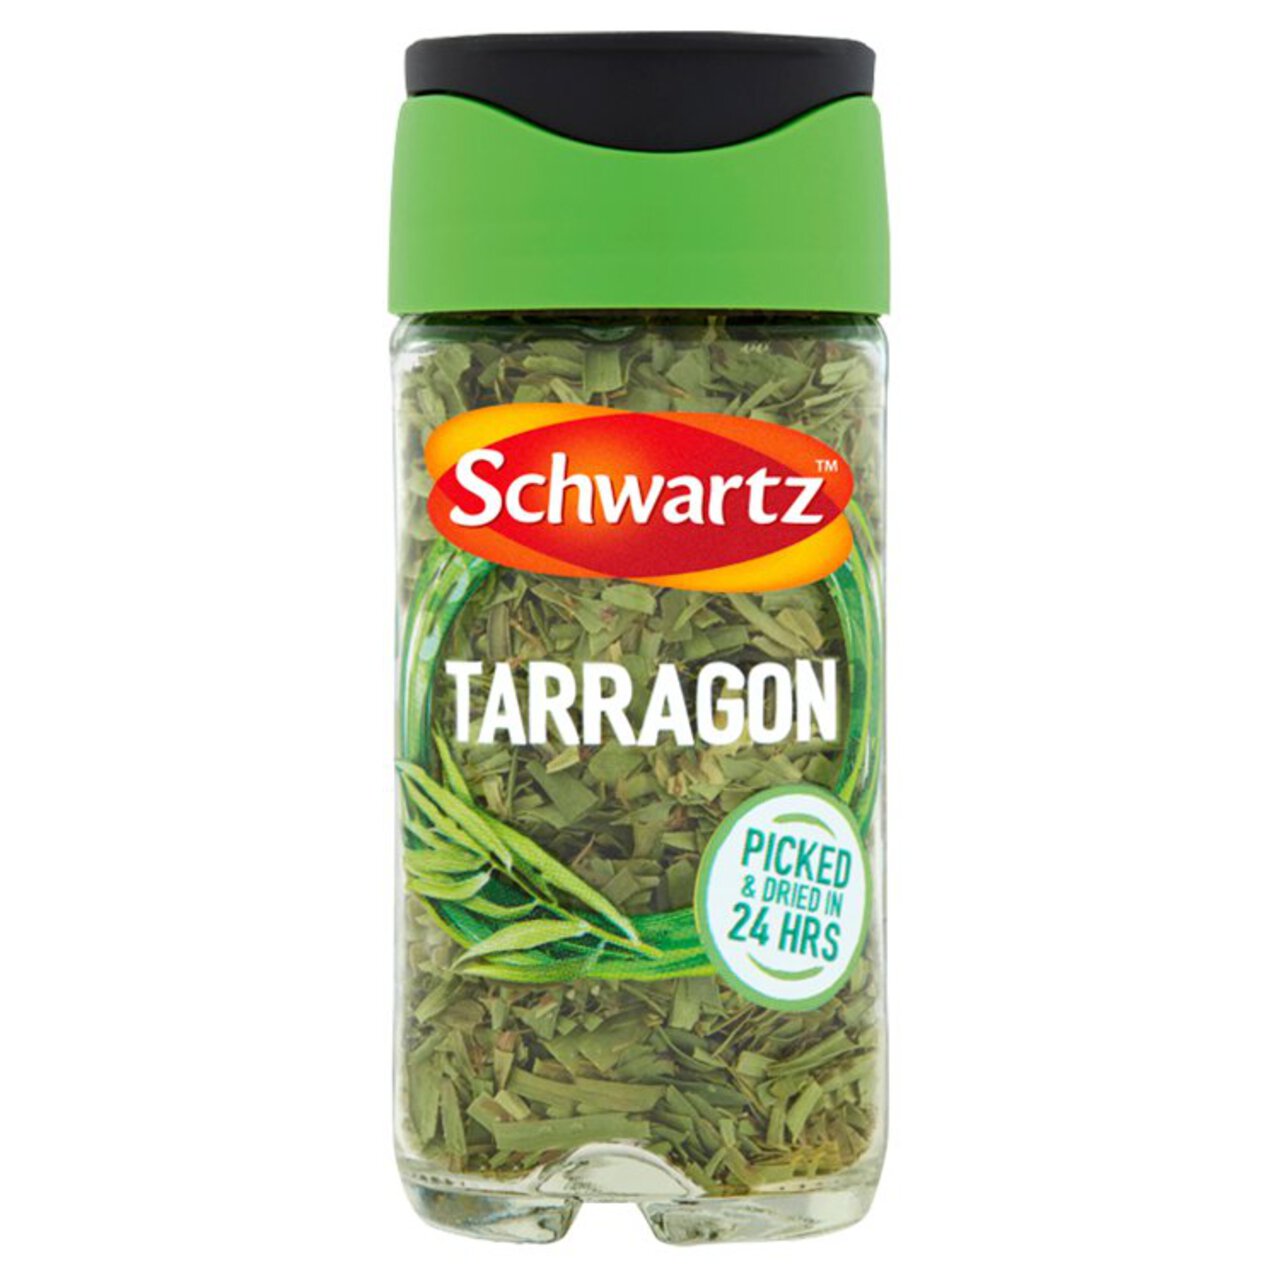 Schwartz Tarragon Chopped Jar 5g